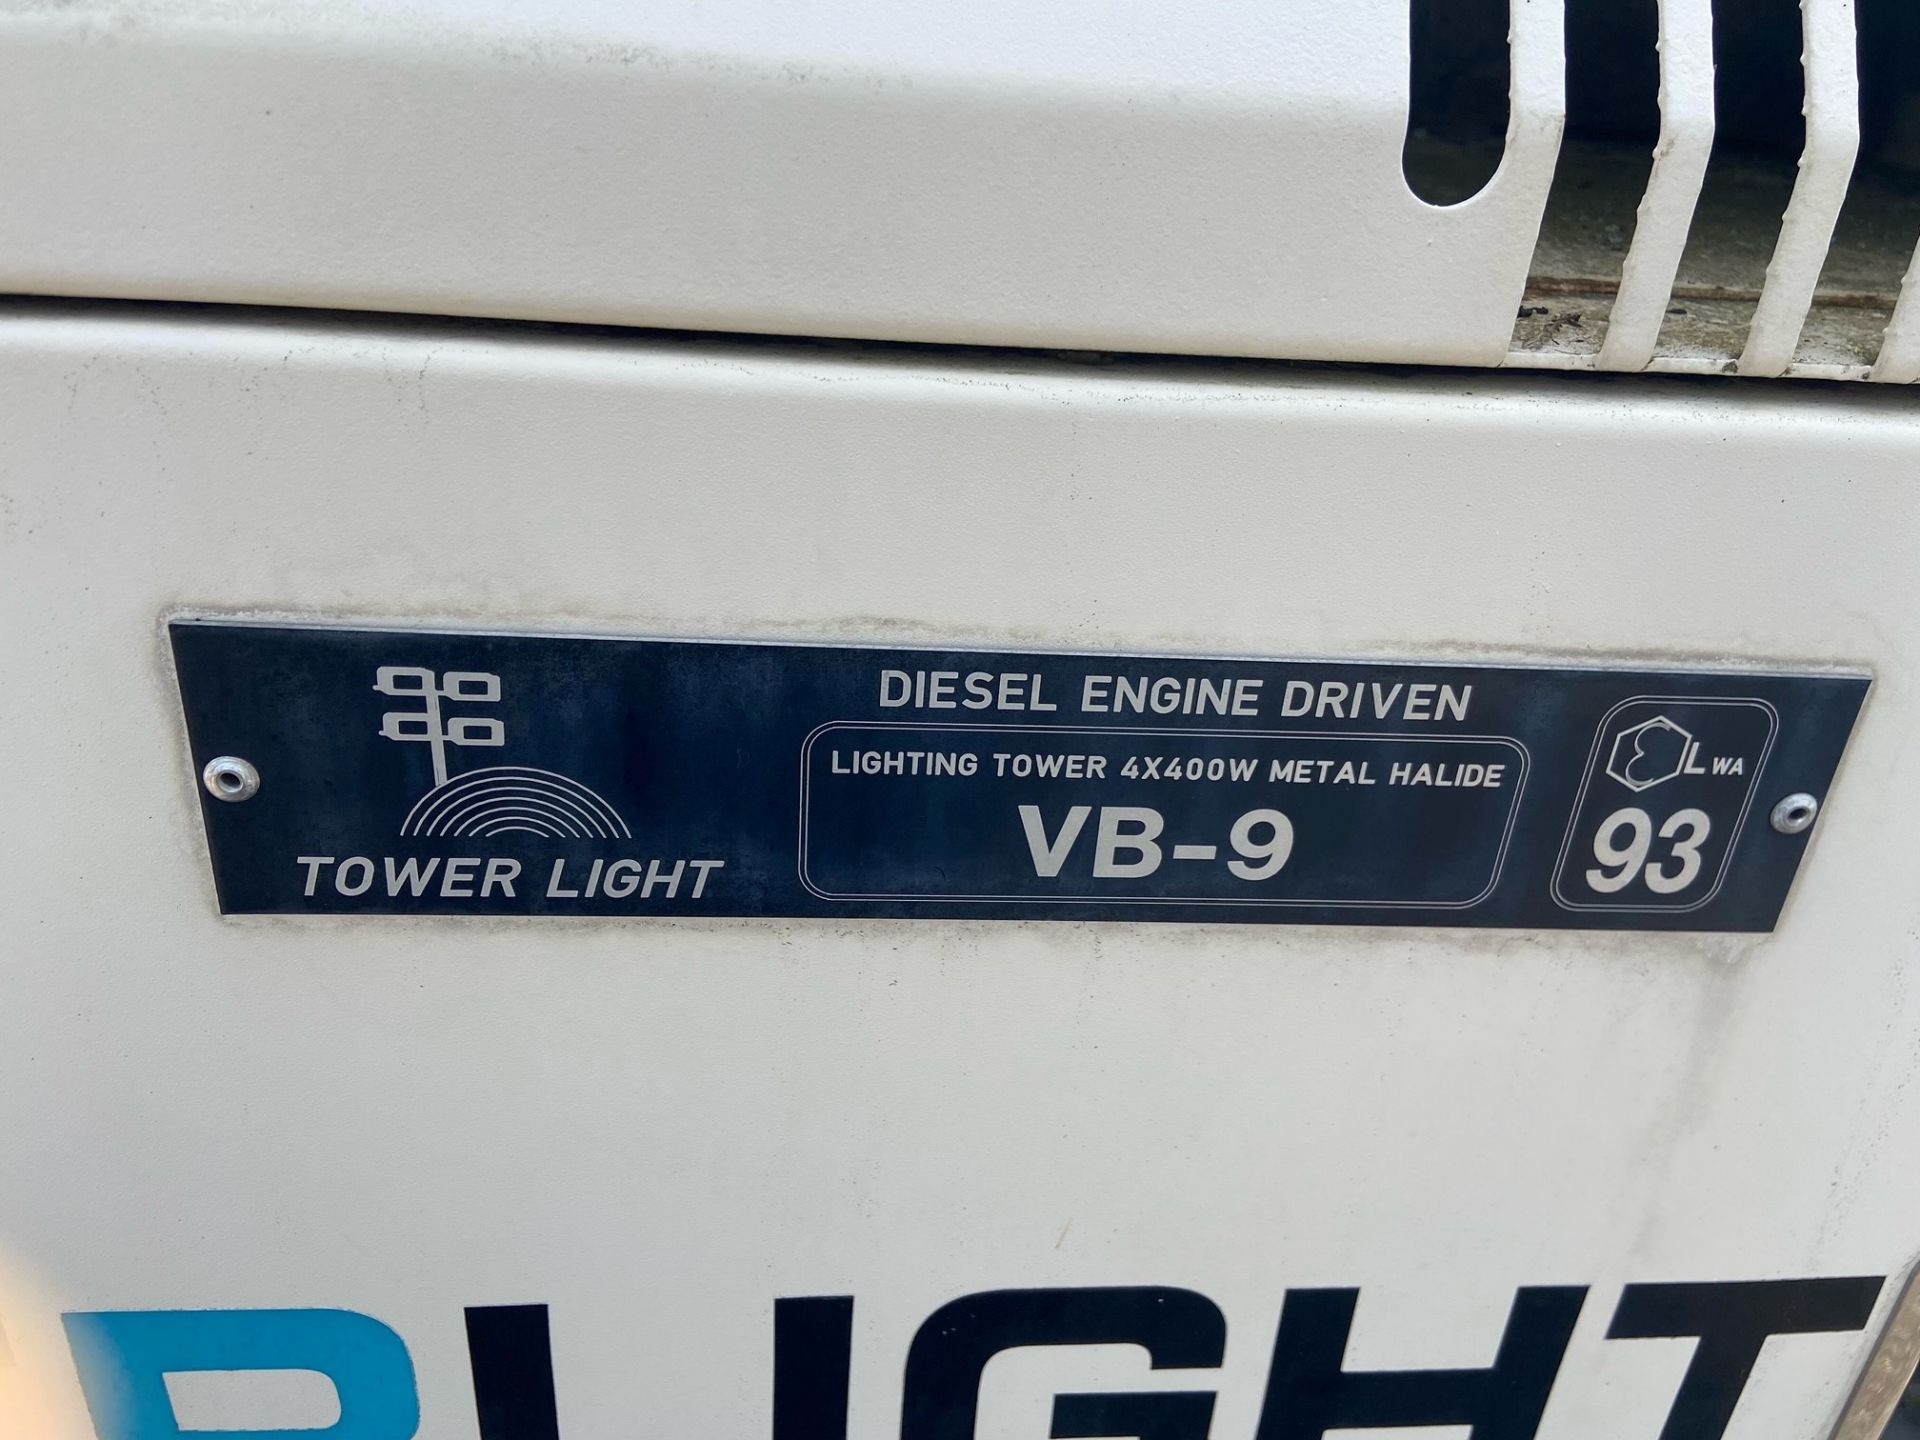 Towerlight VB-9 4x400W metal halide lighting tower - Hatz 1B20-4 diesel engine - Bild 8 aus 9